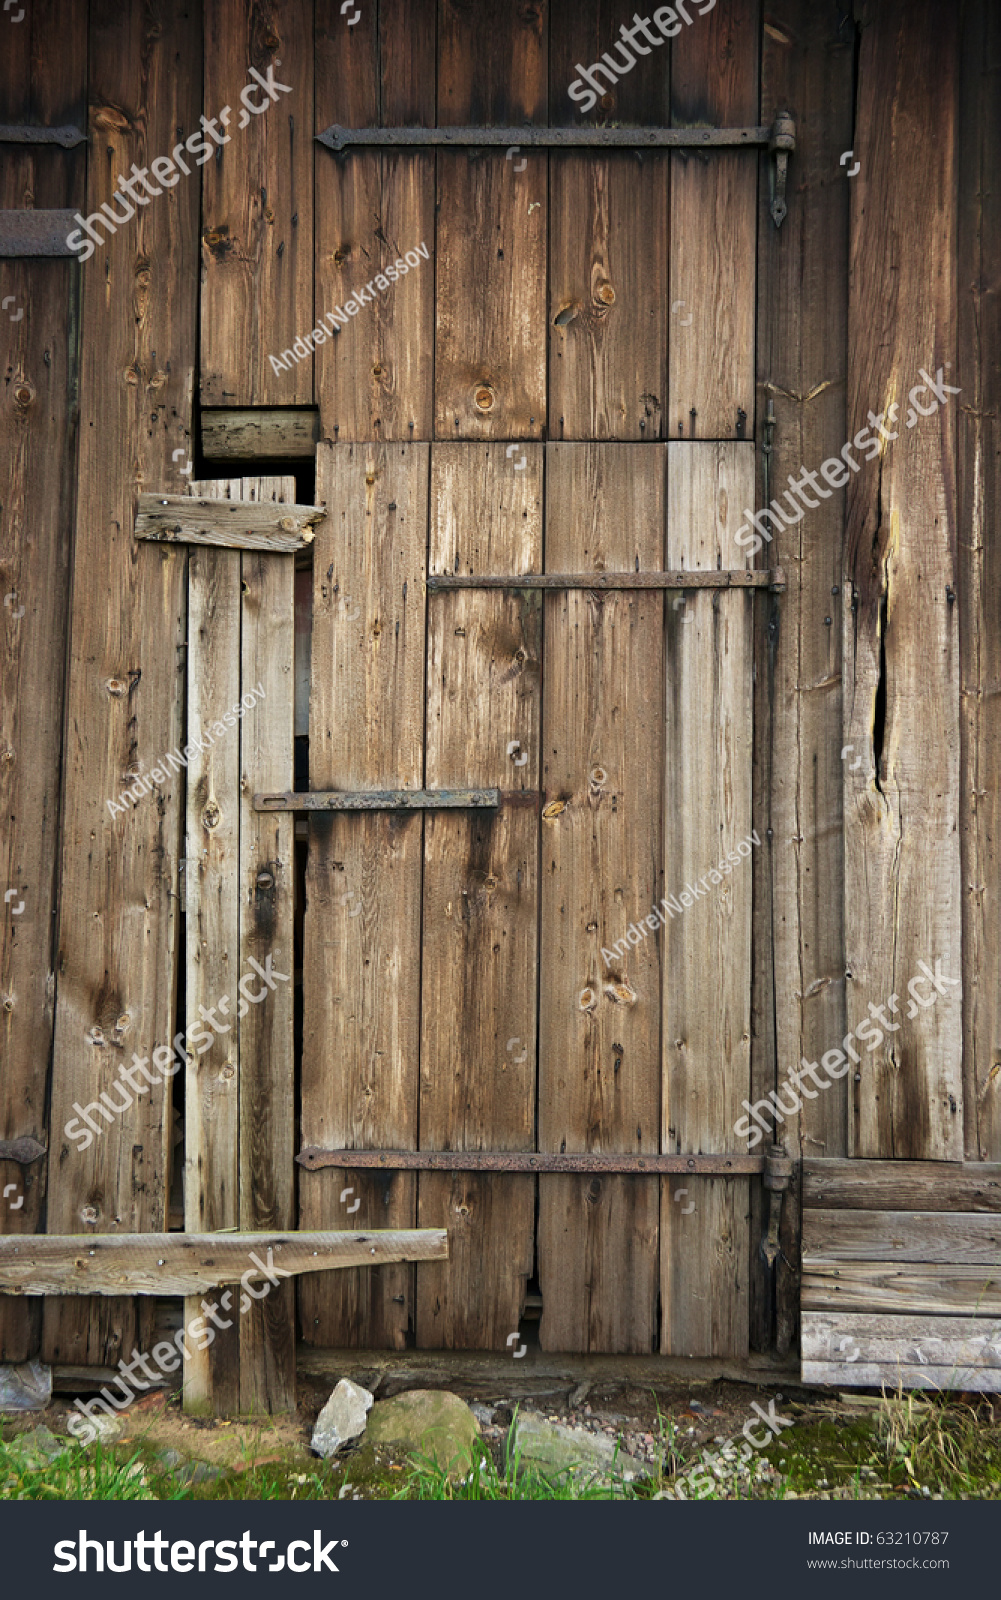 Wooden Door Old Barn Stock Photo 63210787 - Shutterstock